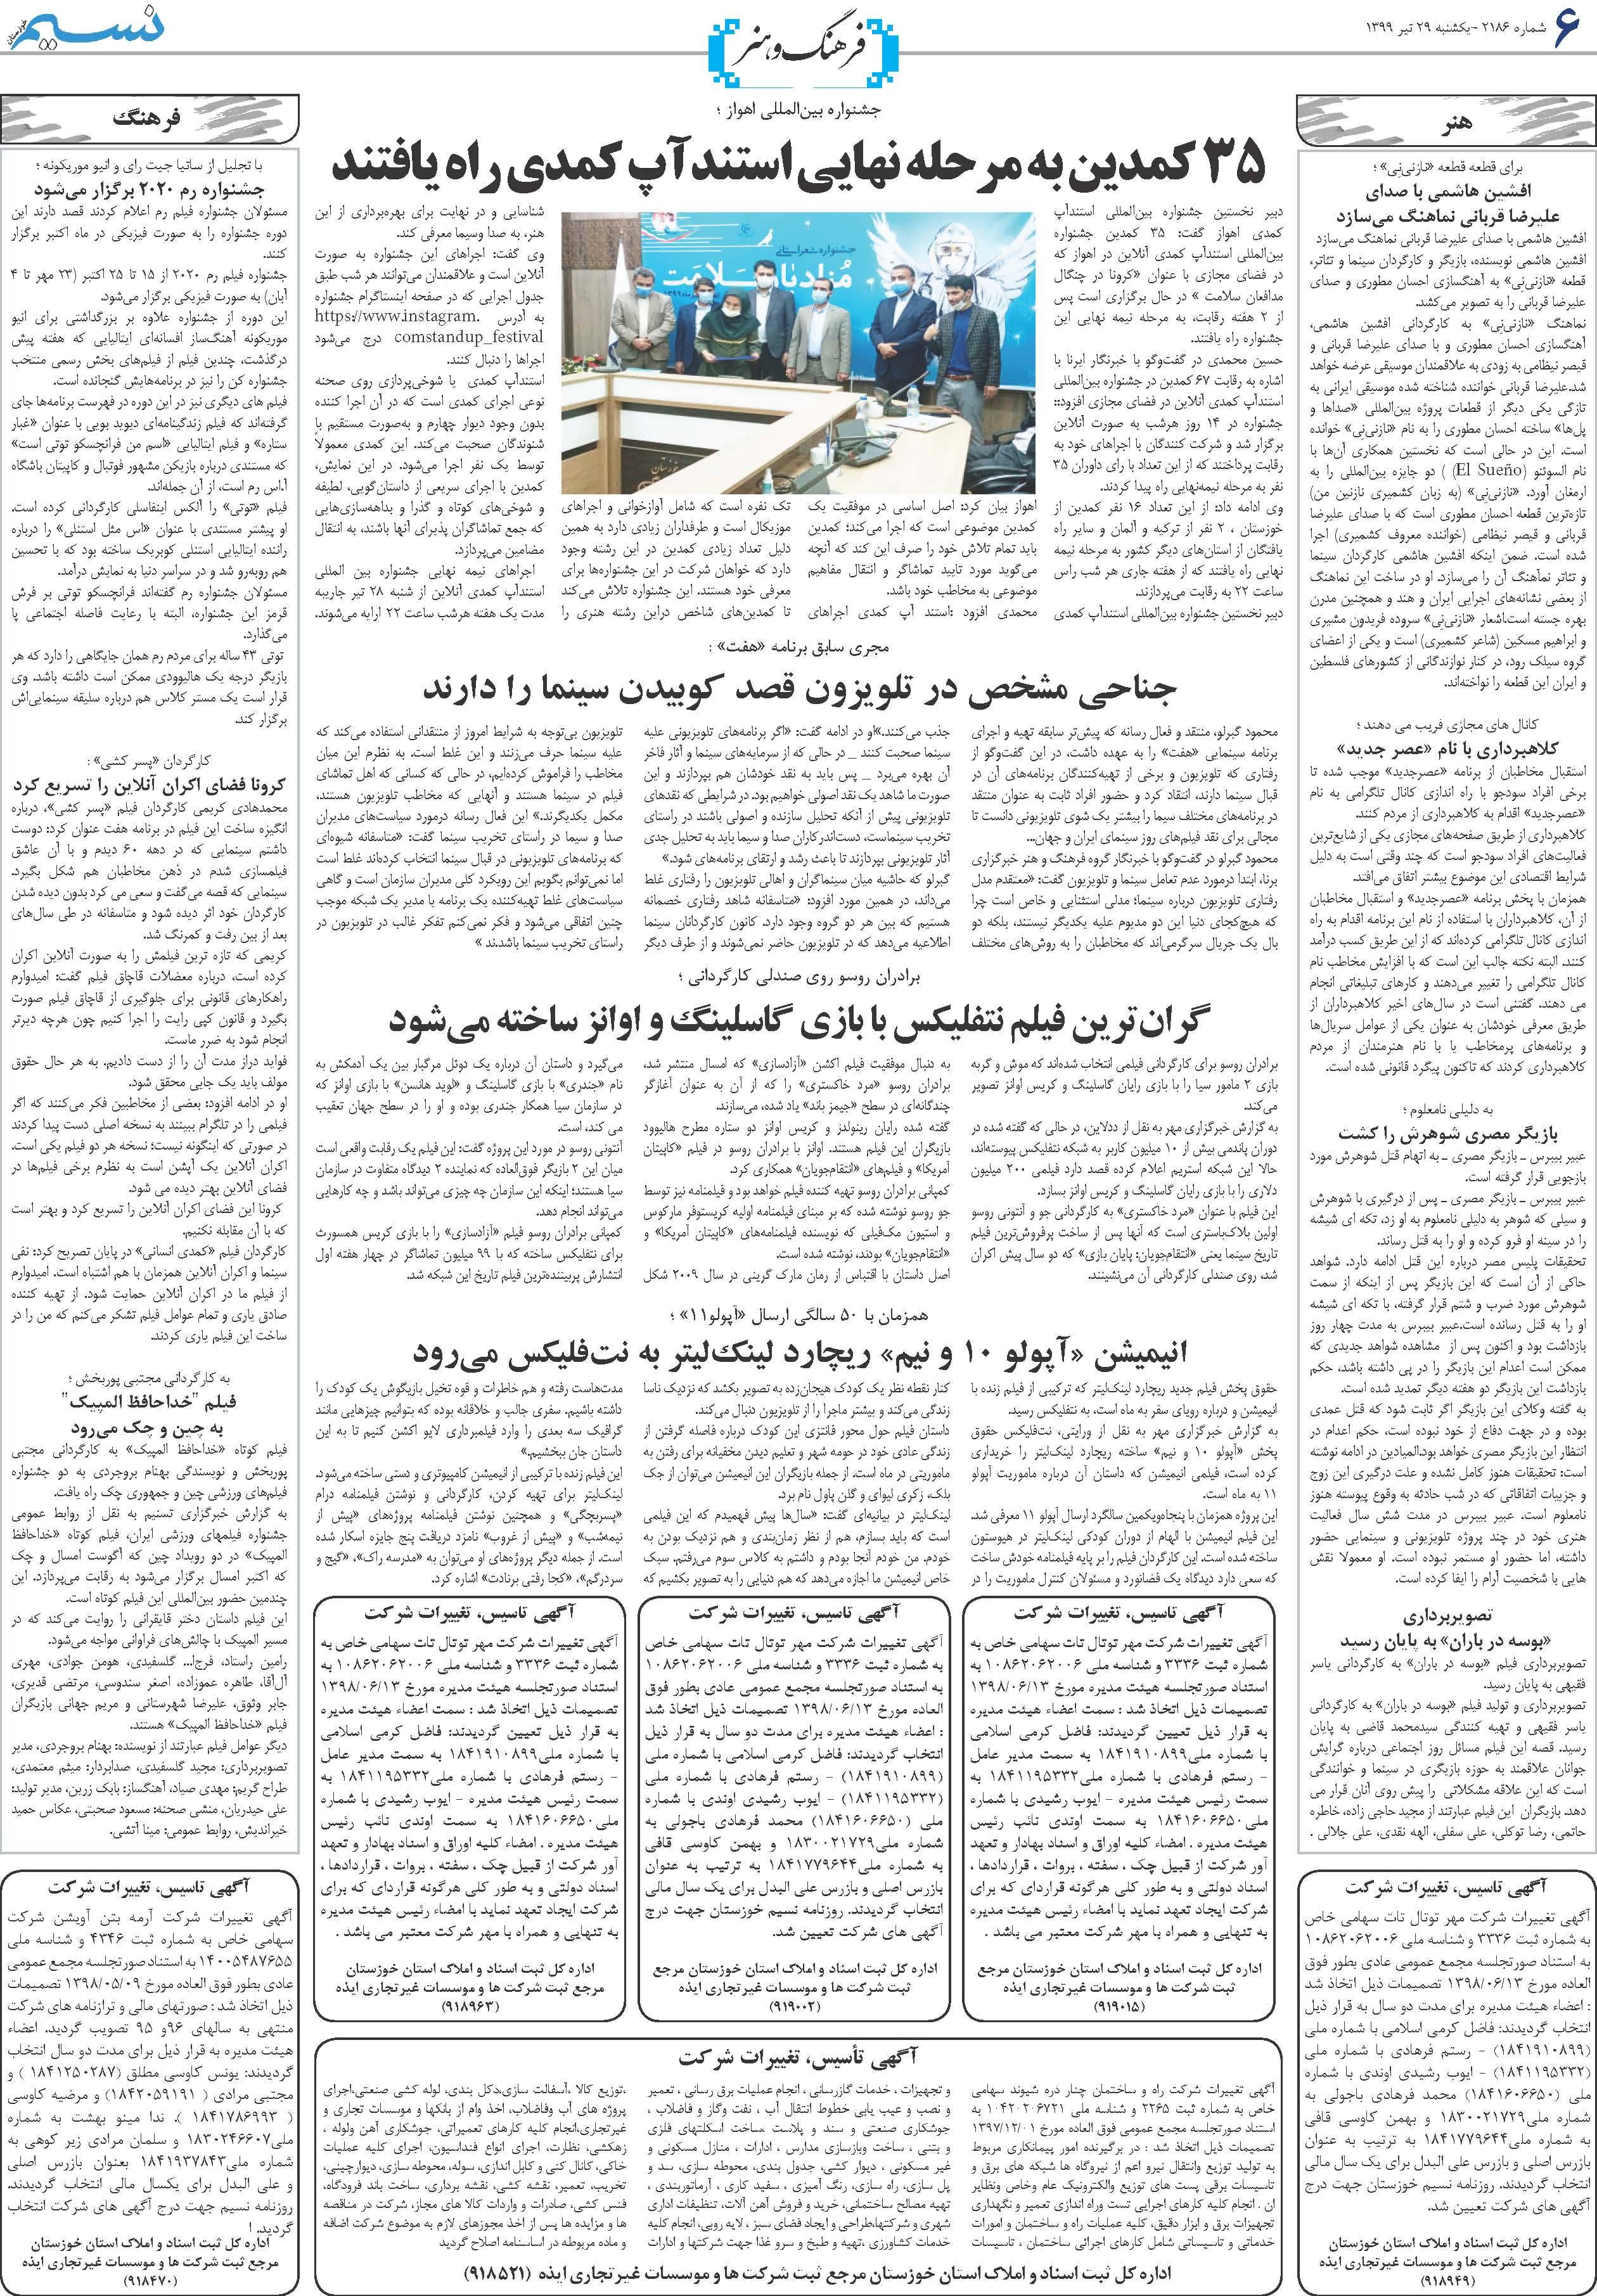 صفحه فرهنگ و هنر روزنامه نسیم شماره 2186